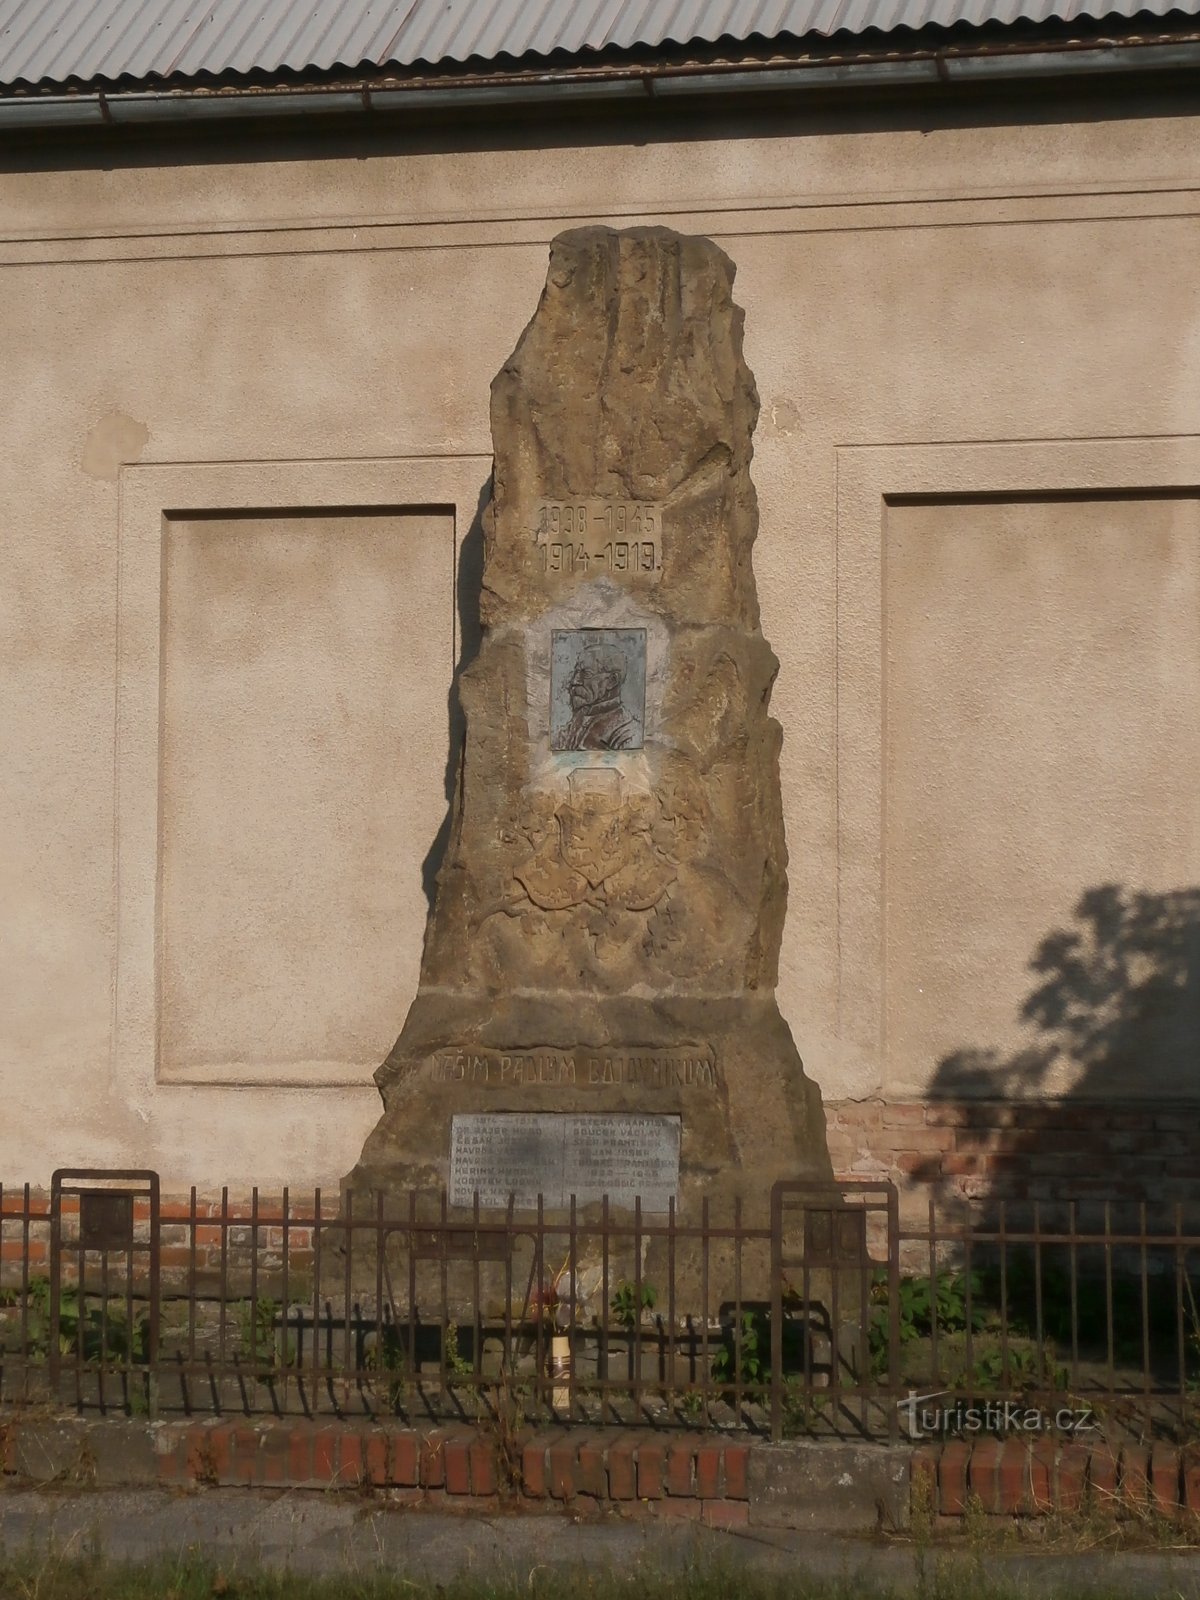 Ensimmäisessä maailmansodassa kaatuneiden muistomerkki (Třebeš)